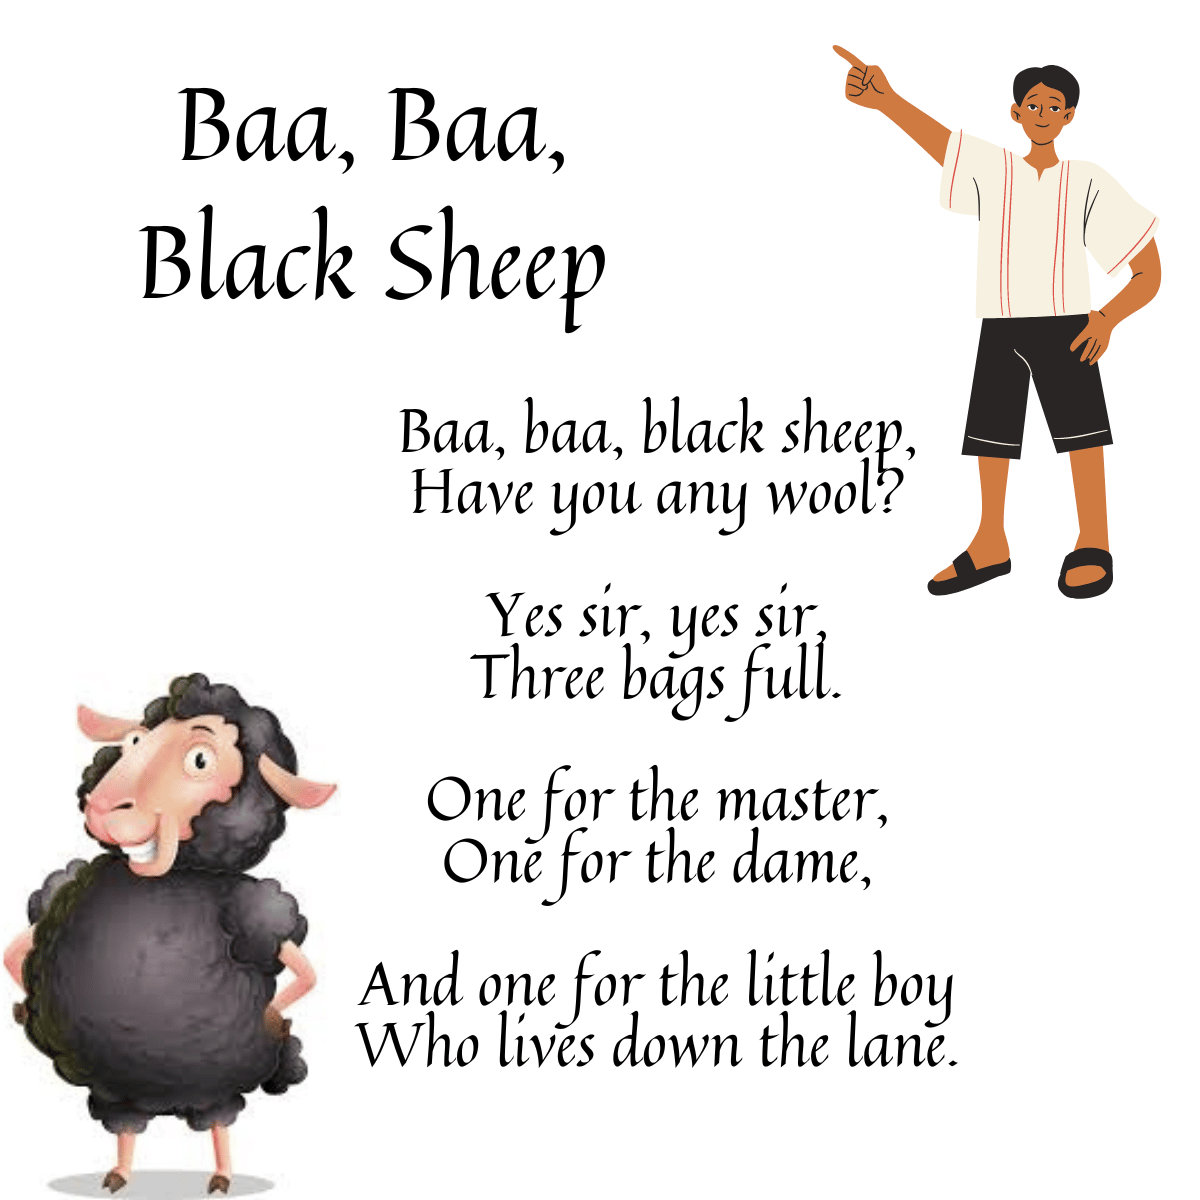 BAA, BAA, BLACK SHEEP